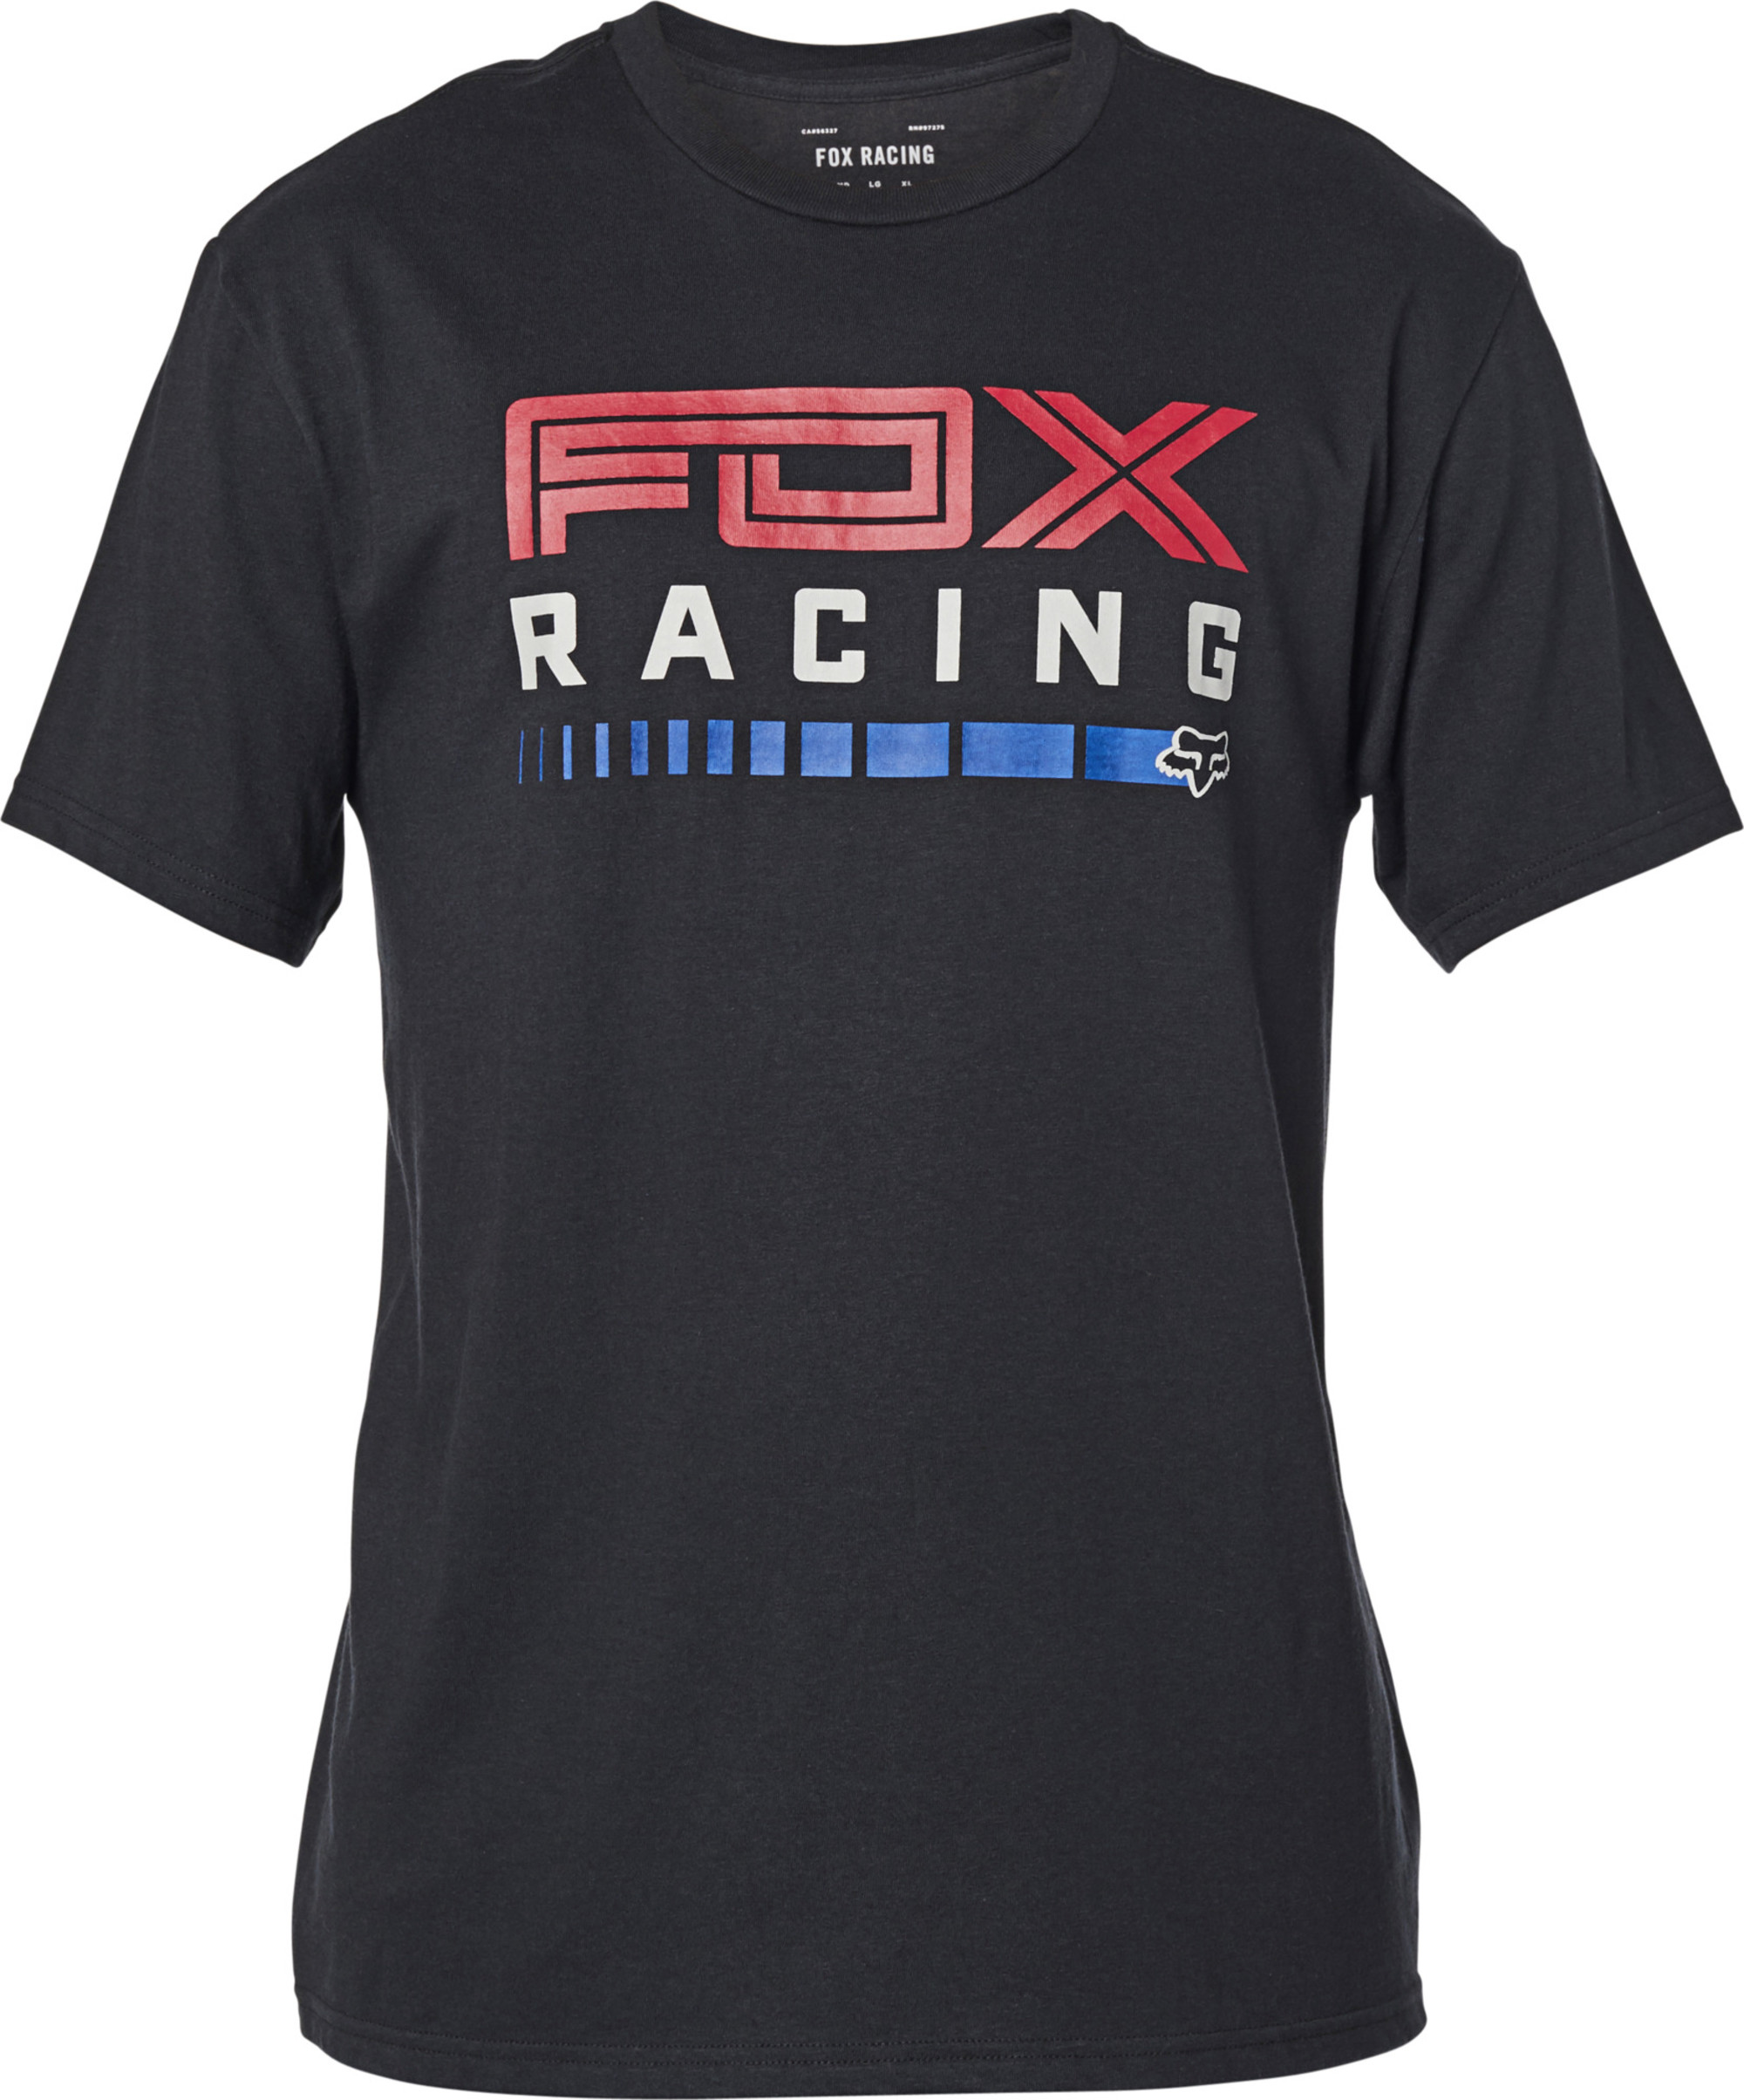 fox racing t-shirt shirts for men show stopper